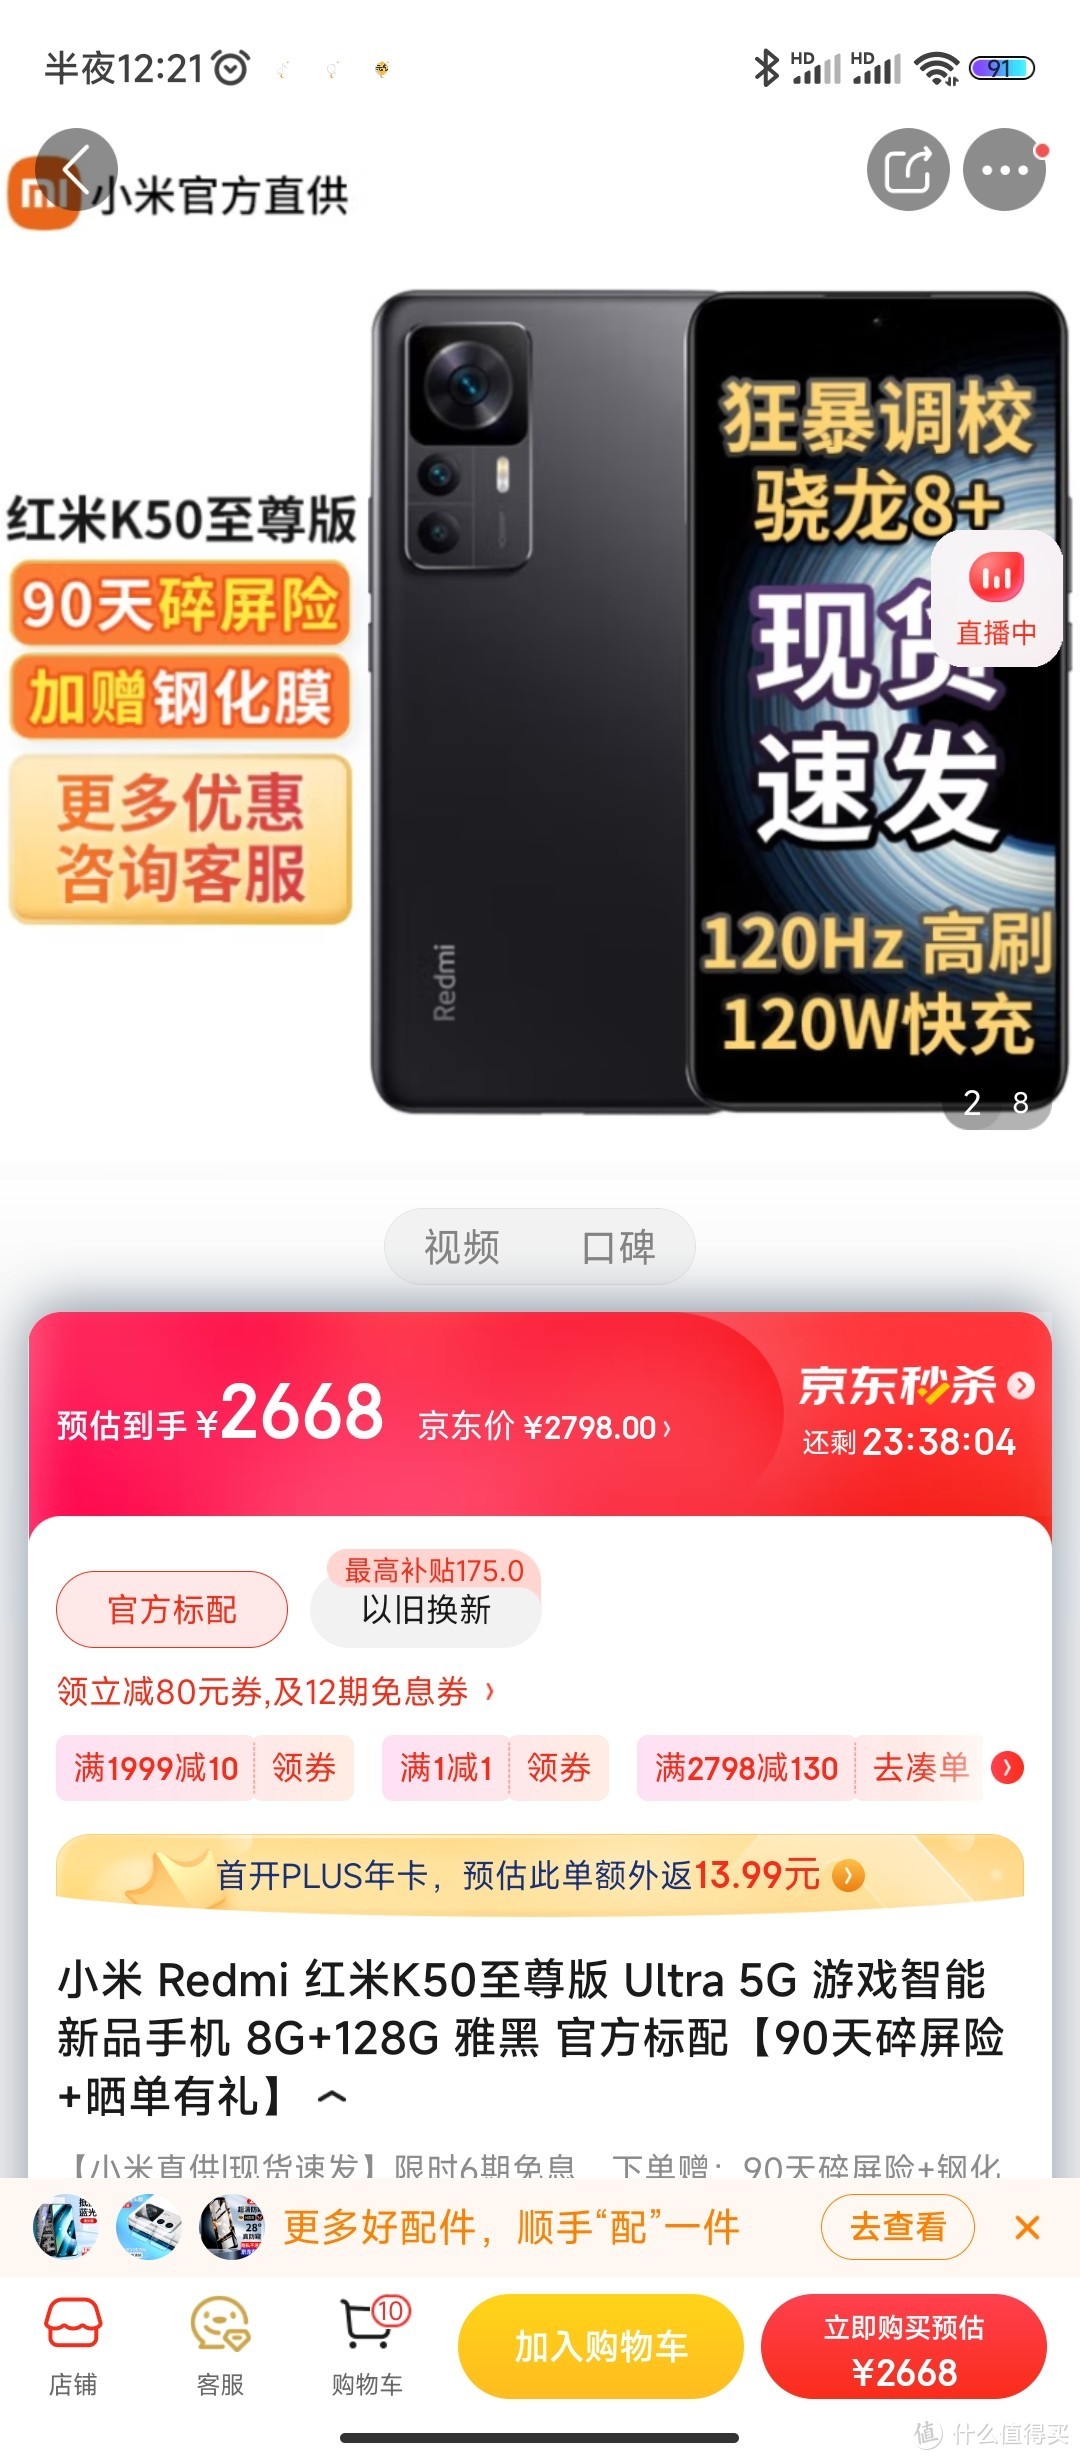 小米 Redmi 红米K50至尊版 Ultra 5G 游戏智能新品手机 8G+128G 雅黑 官方标配【90天碎屏险+晒单有礼】